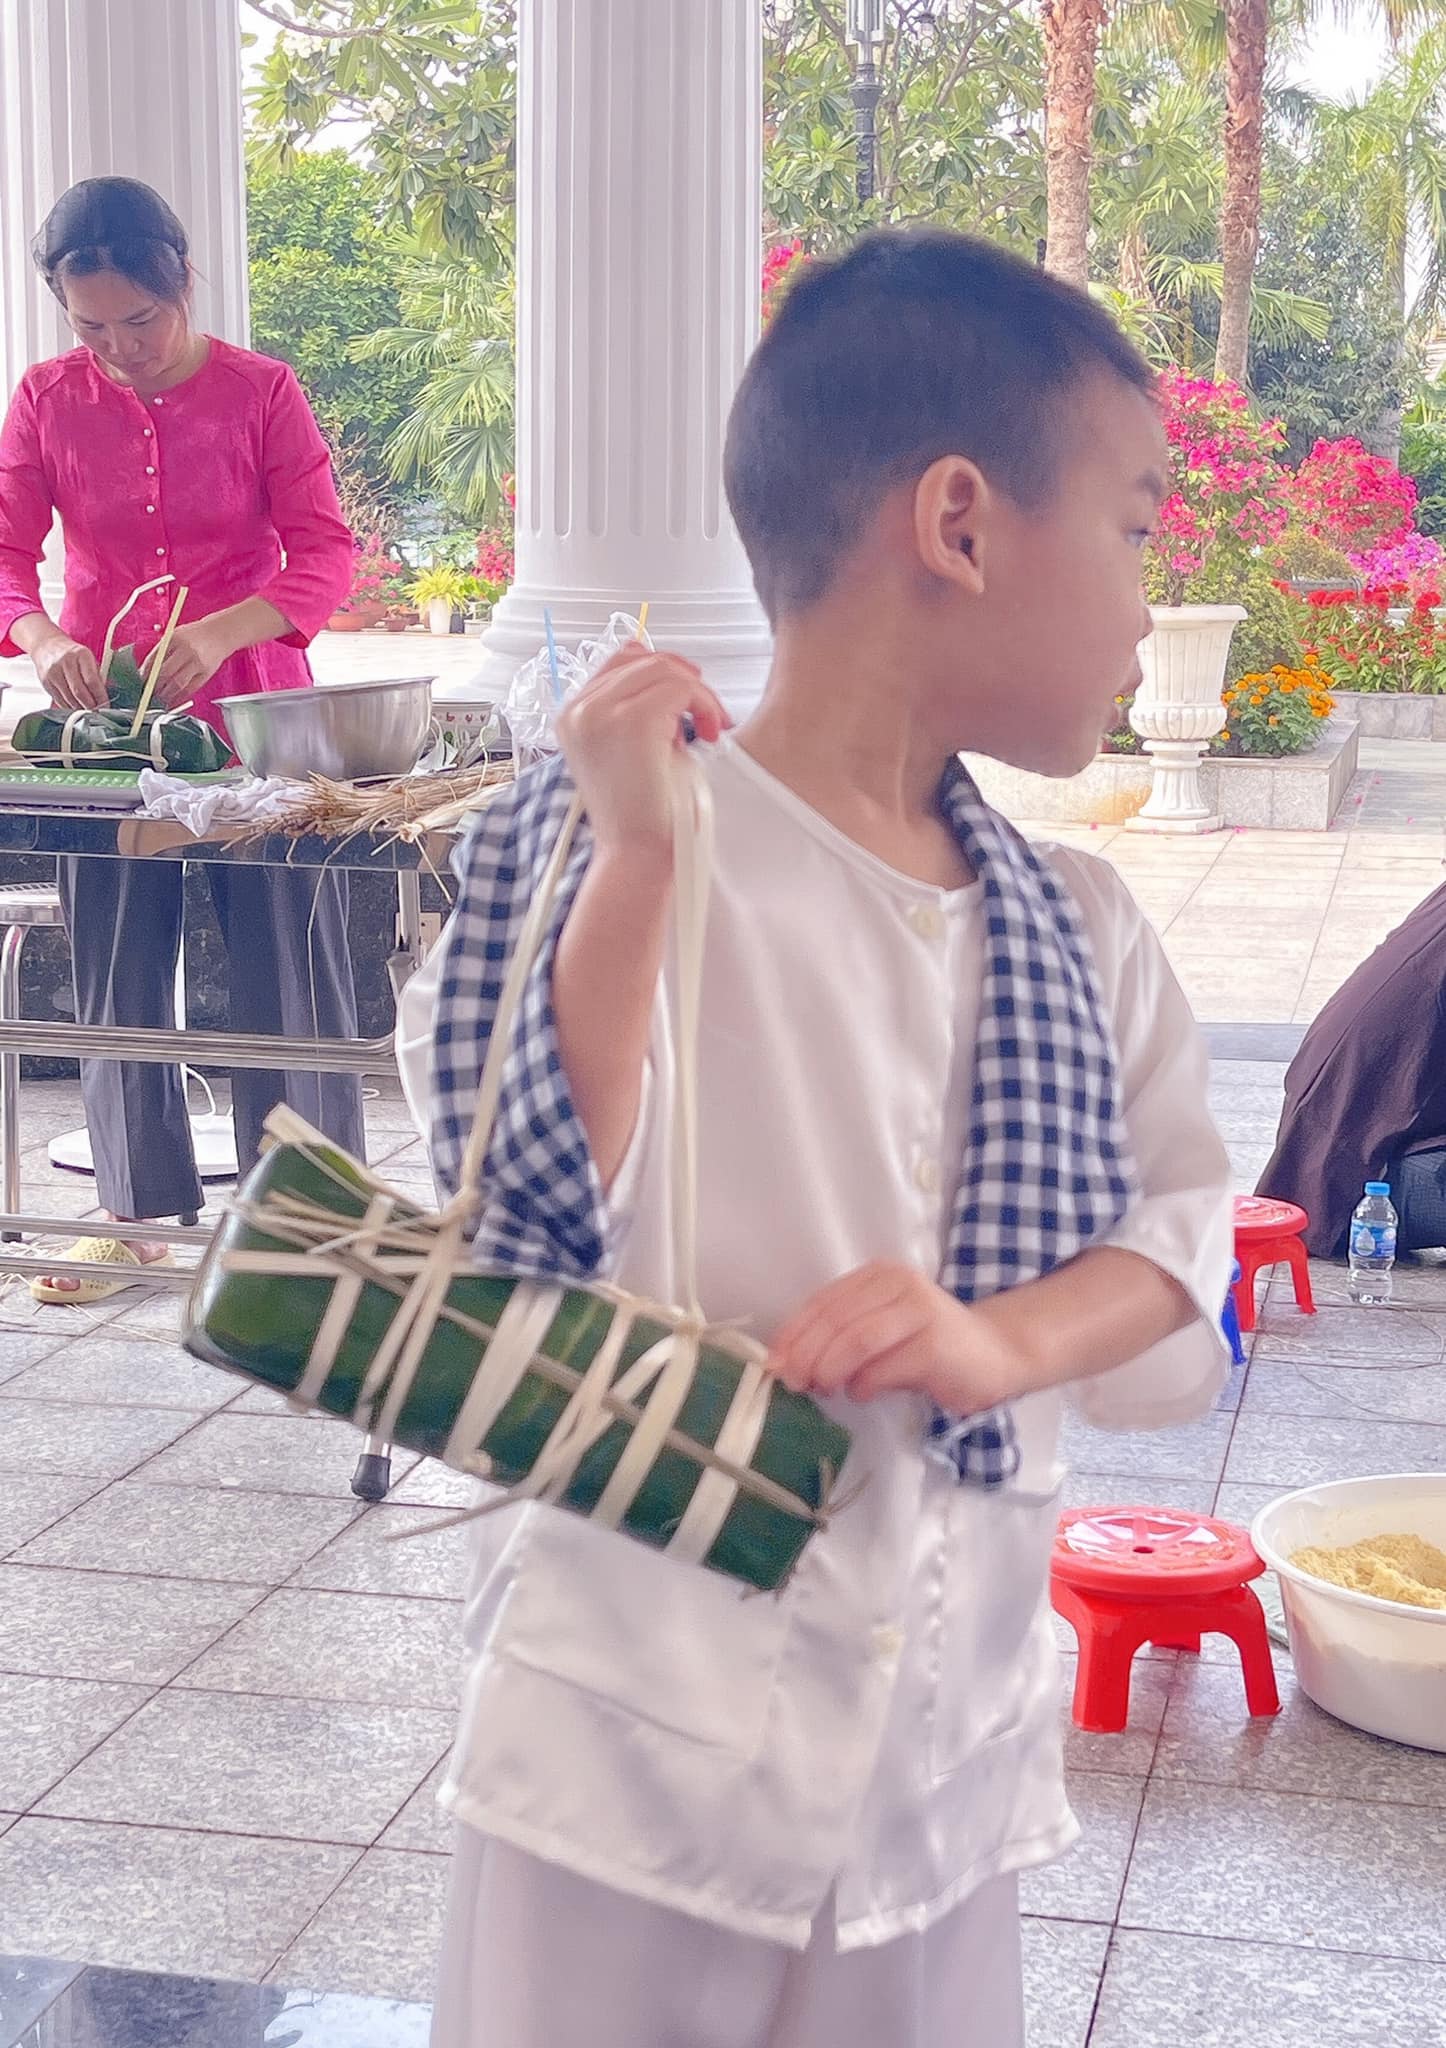 Con trai Lan Khuê trải nghiệm gói bánh chưng ngày Tết cùng mẹ, hoạt động giúp bé hiểu thêm ý nghĩa Tết cổ truyền Việt Nam - Ảnh 2.